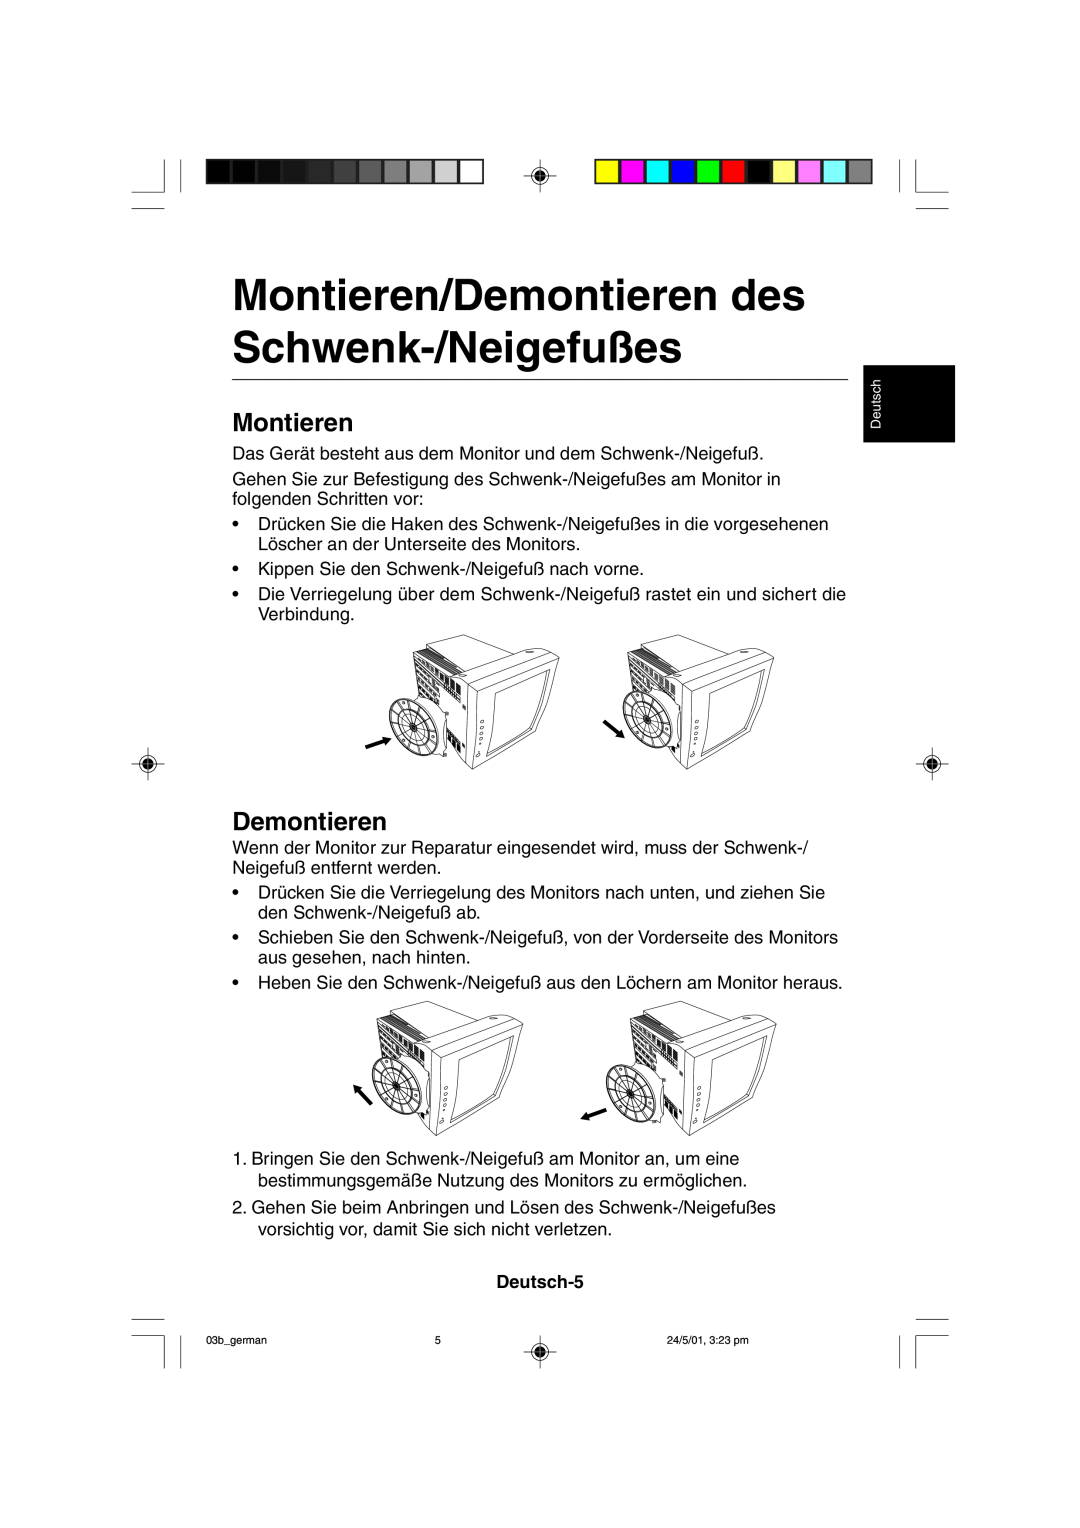 Mitsubishi Electronics M557 user manual Montieren/Demontieren des Schwenk-/Neigefußes, Deutsch-5 